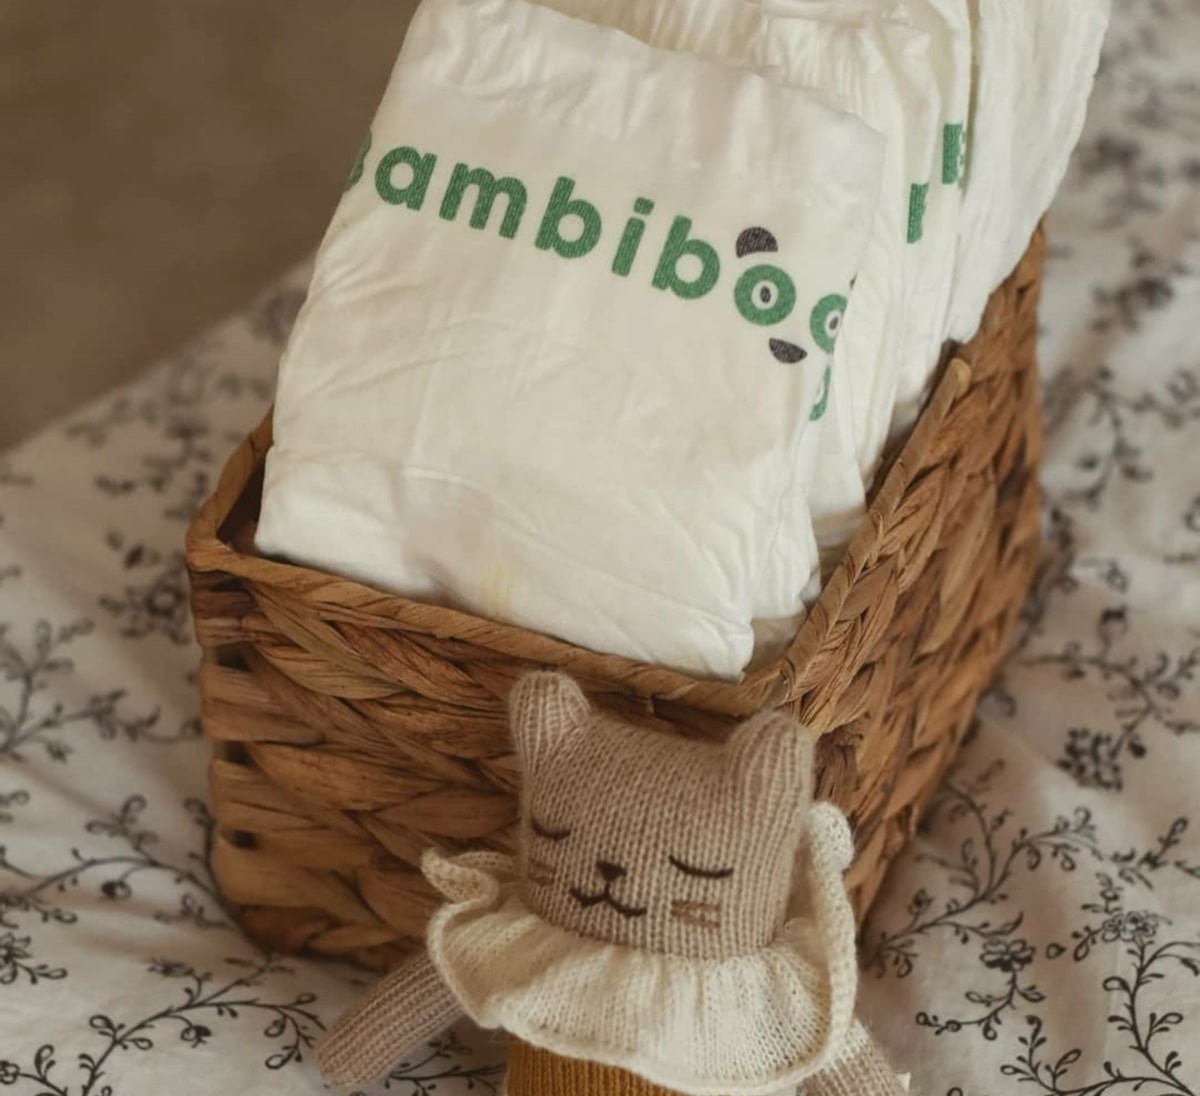 Blog Bambiboo - Smółka - czym jest i kiedy powinna wystąpić u noworodka?